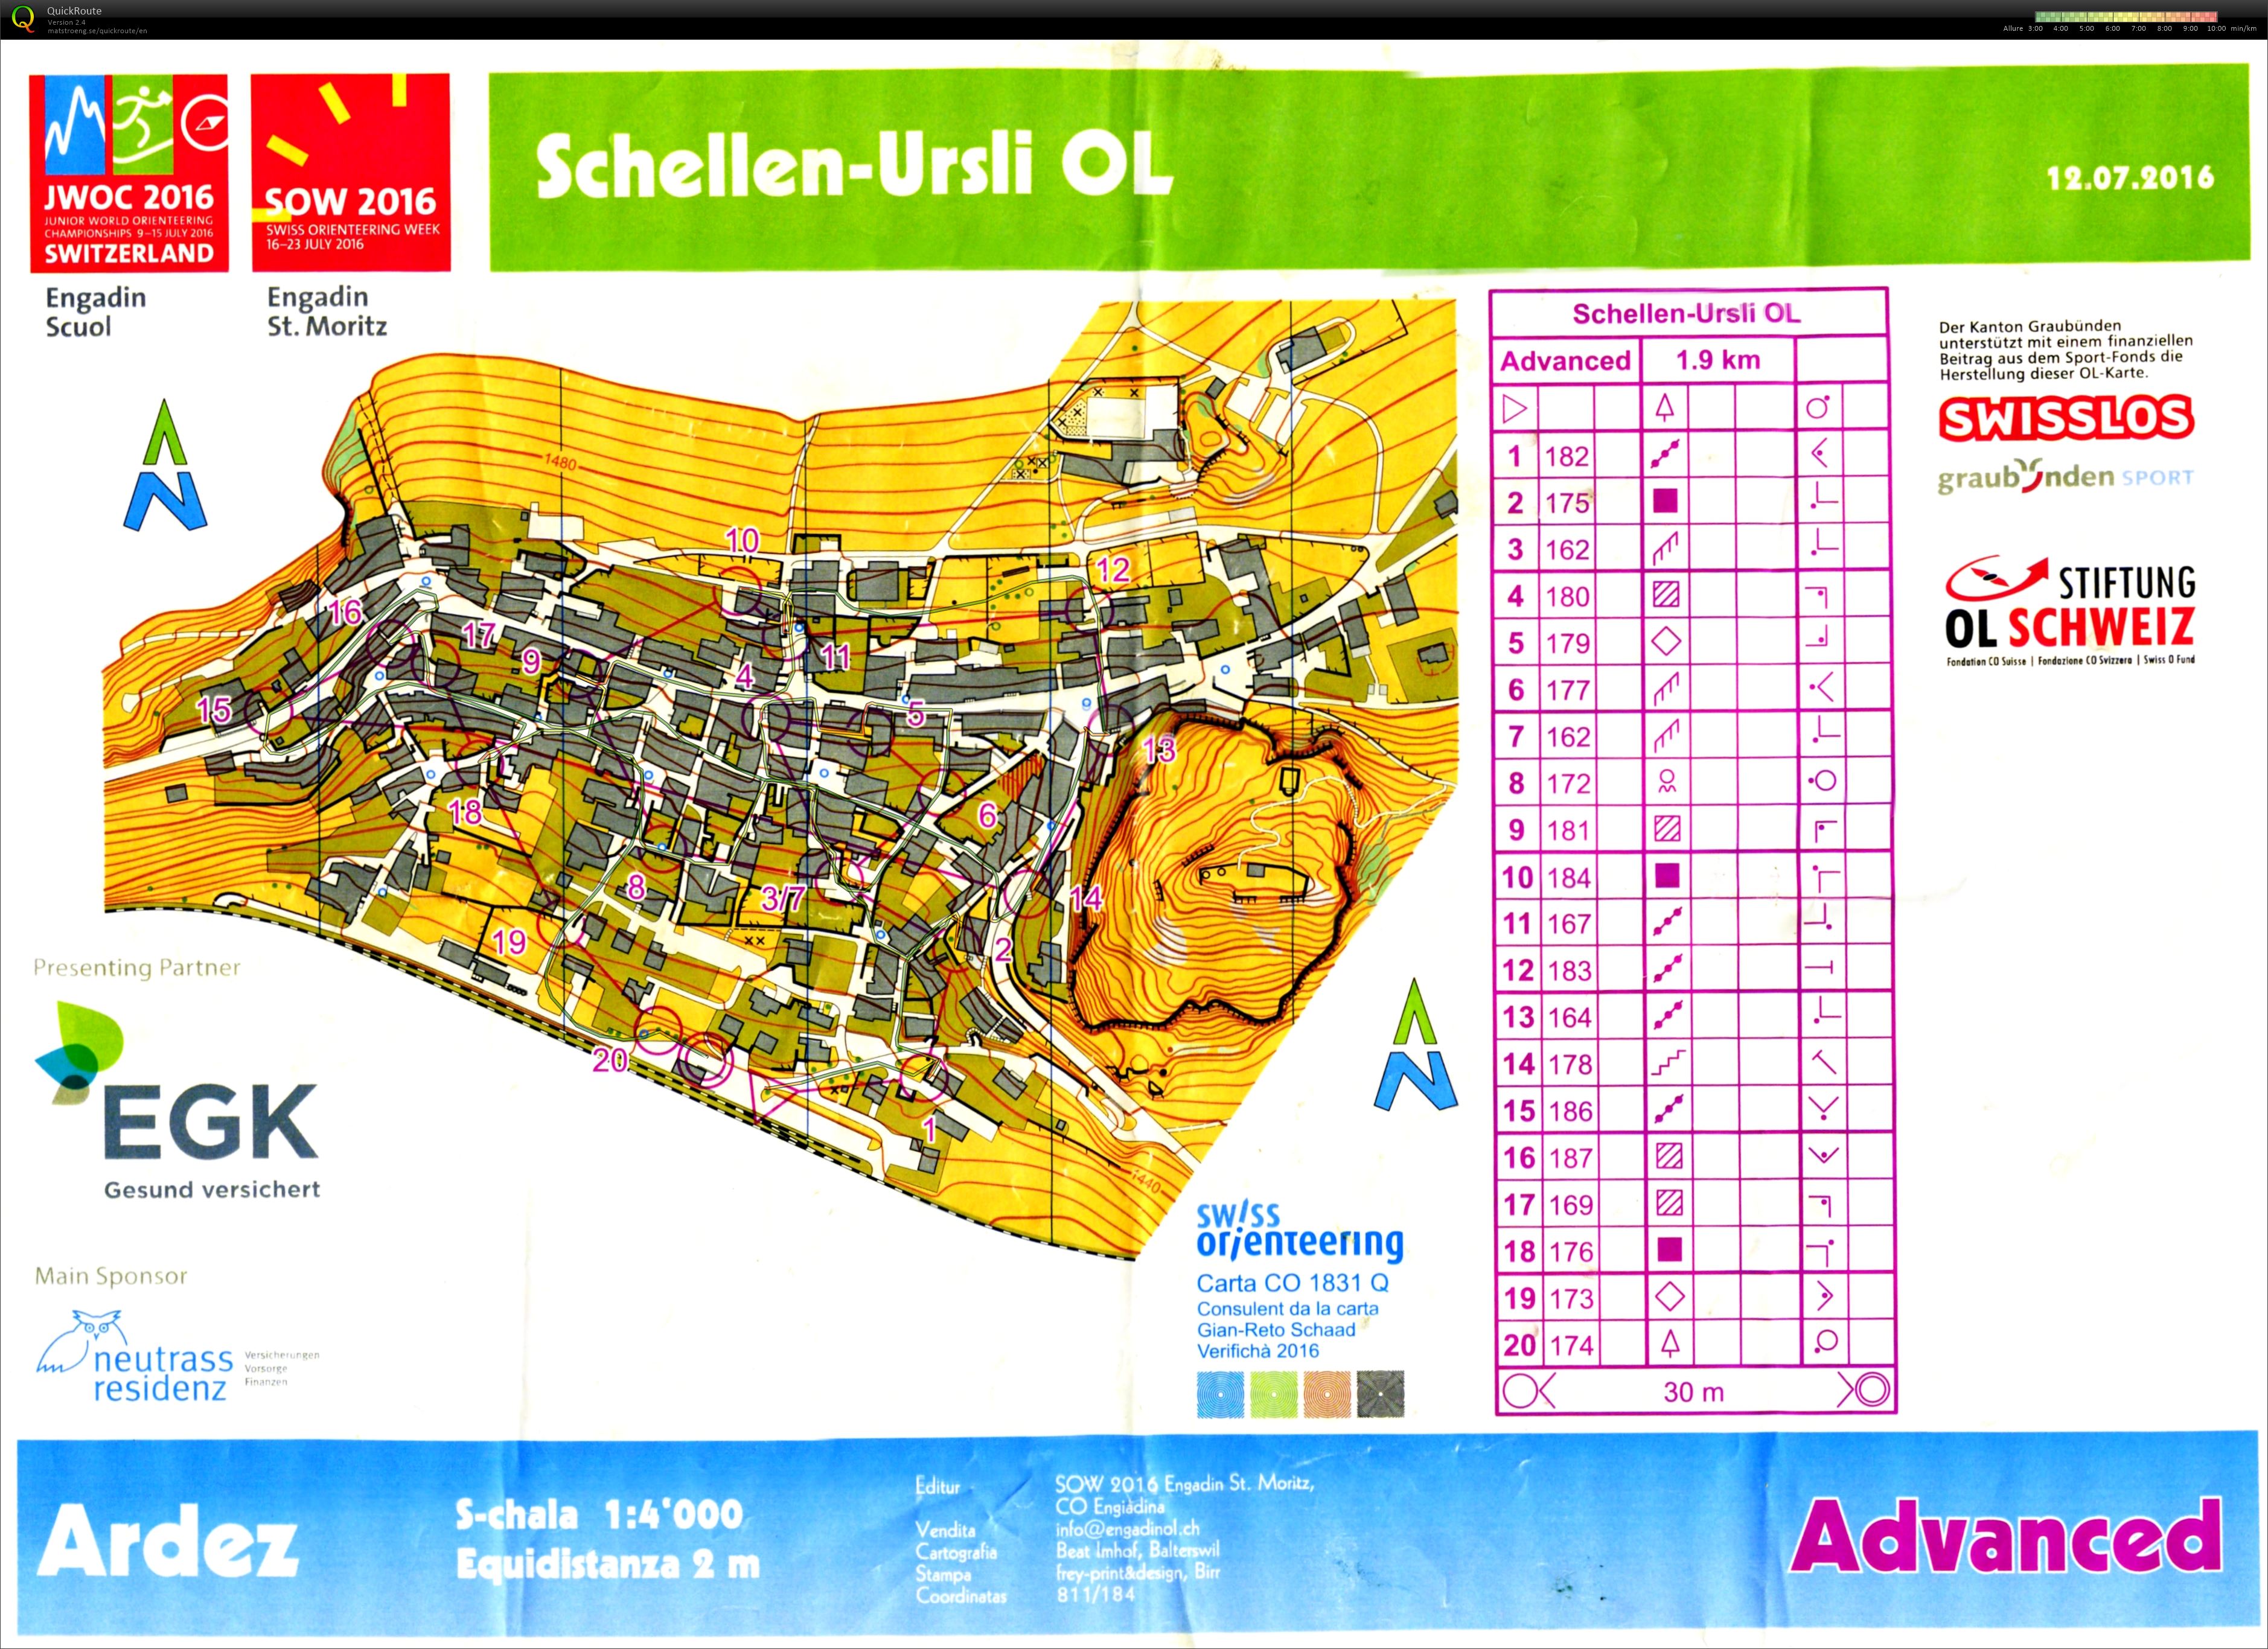 Schellen-Ursli OL (12-07-2016)